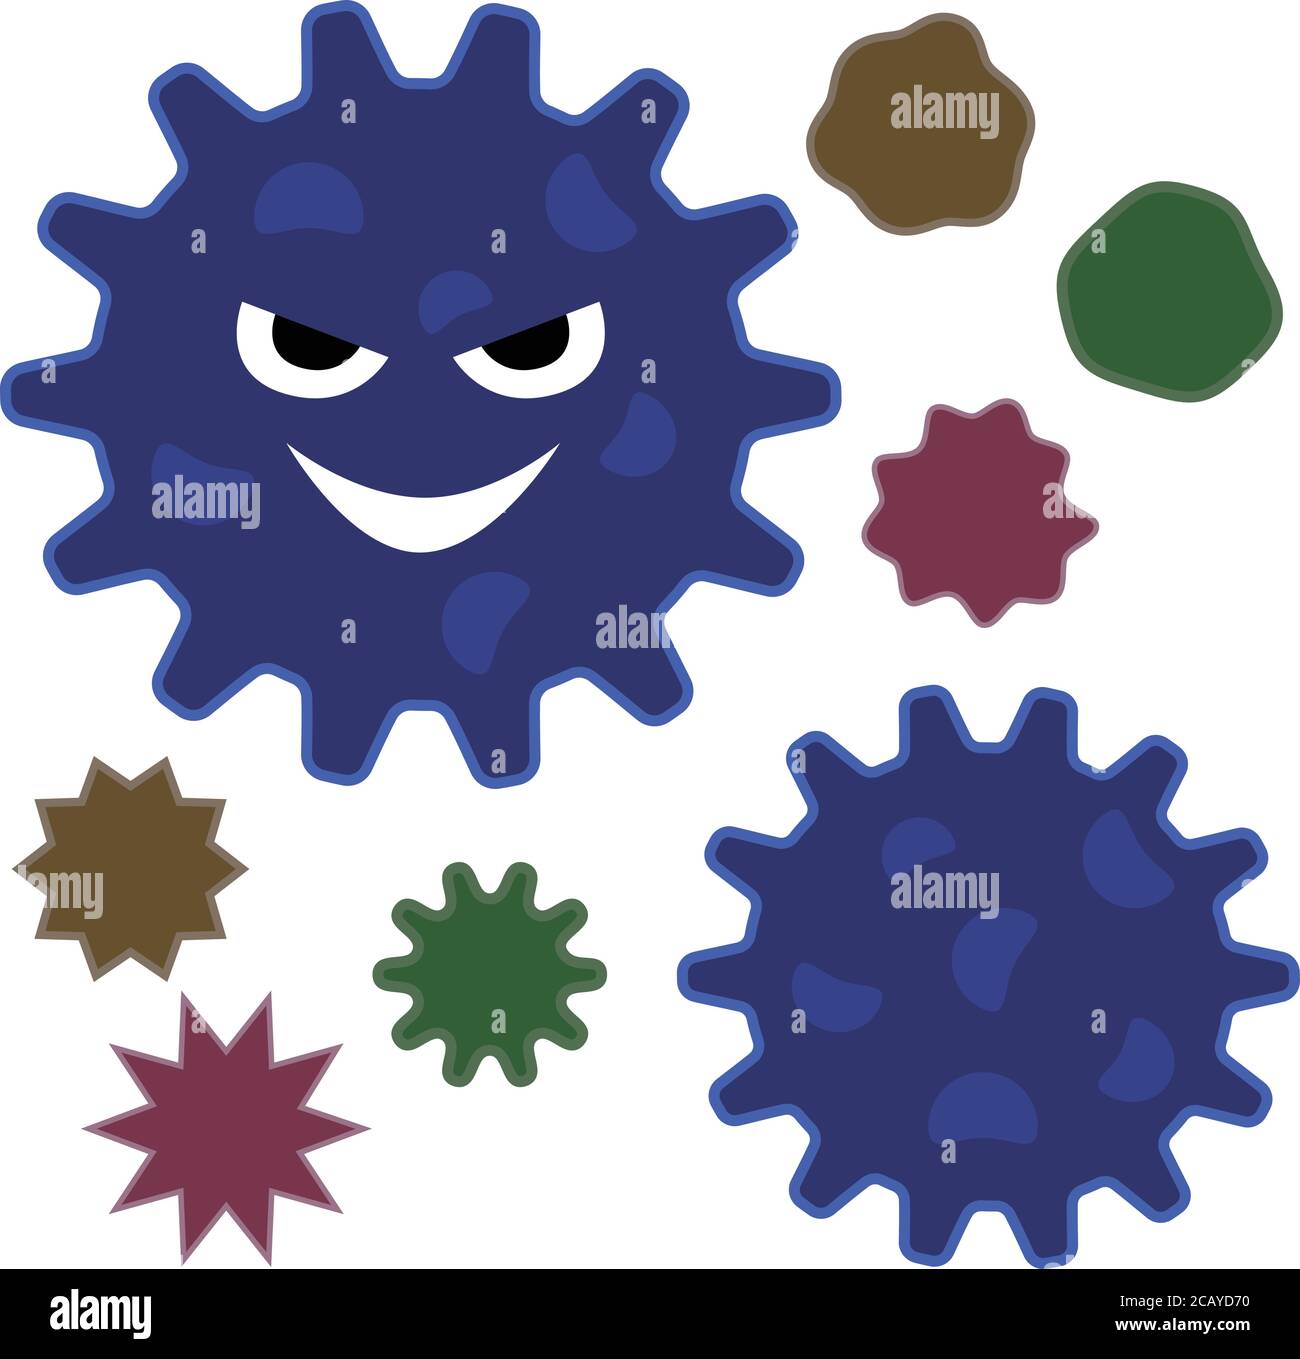 Insieme di vari virus. Illustrazione vettoriale isolata su sfondo bianco. Illustrazione Vettoriale